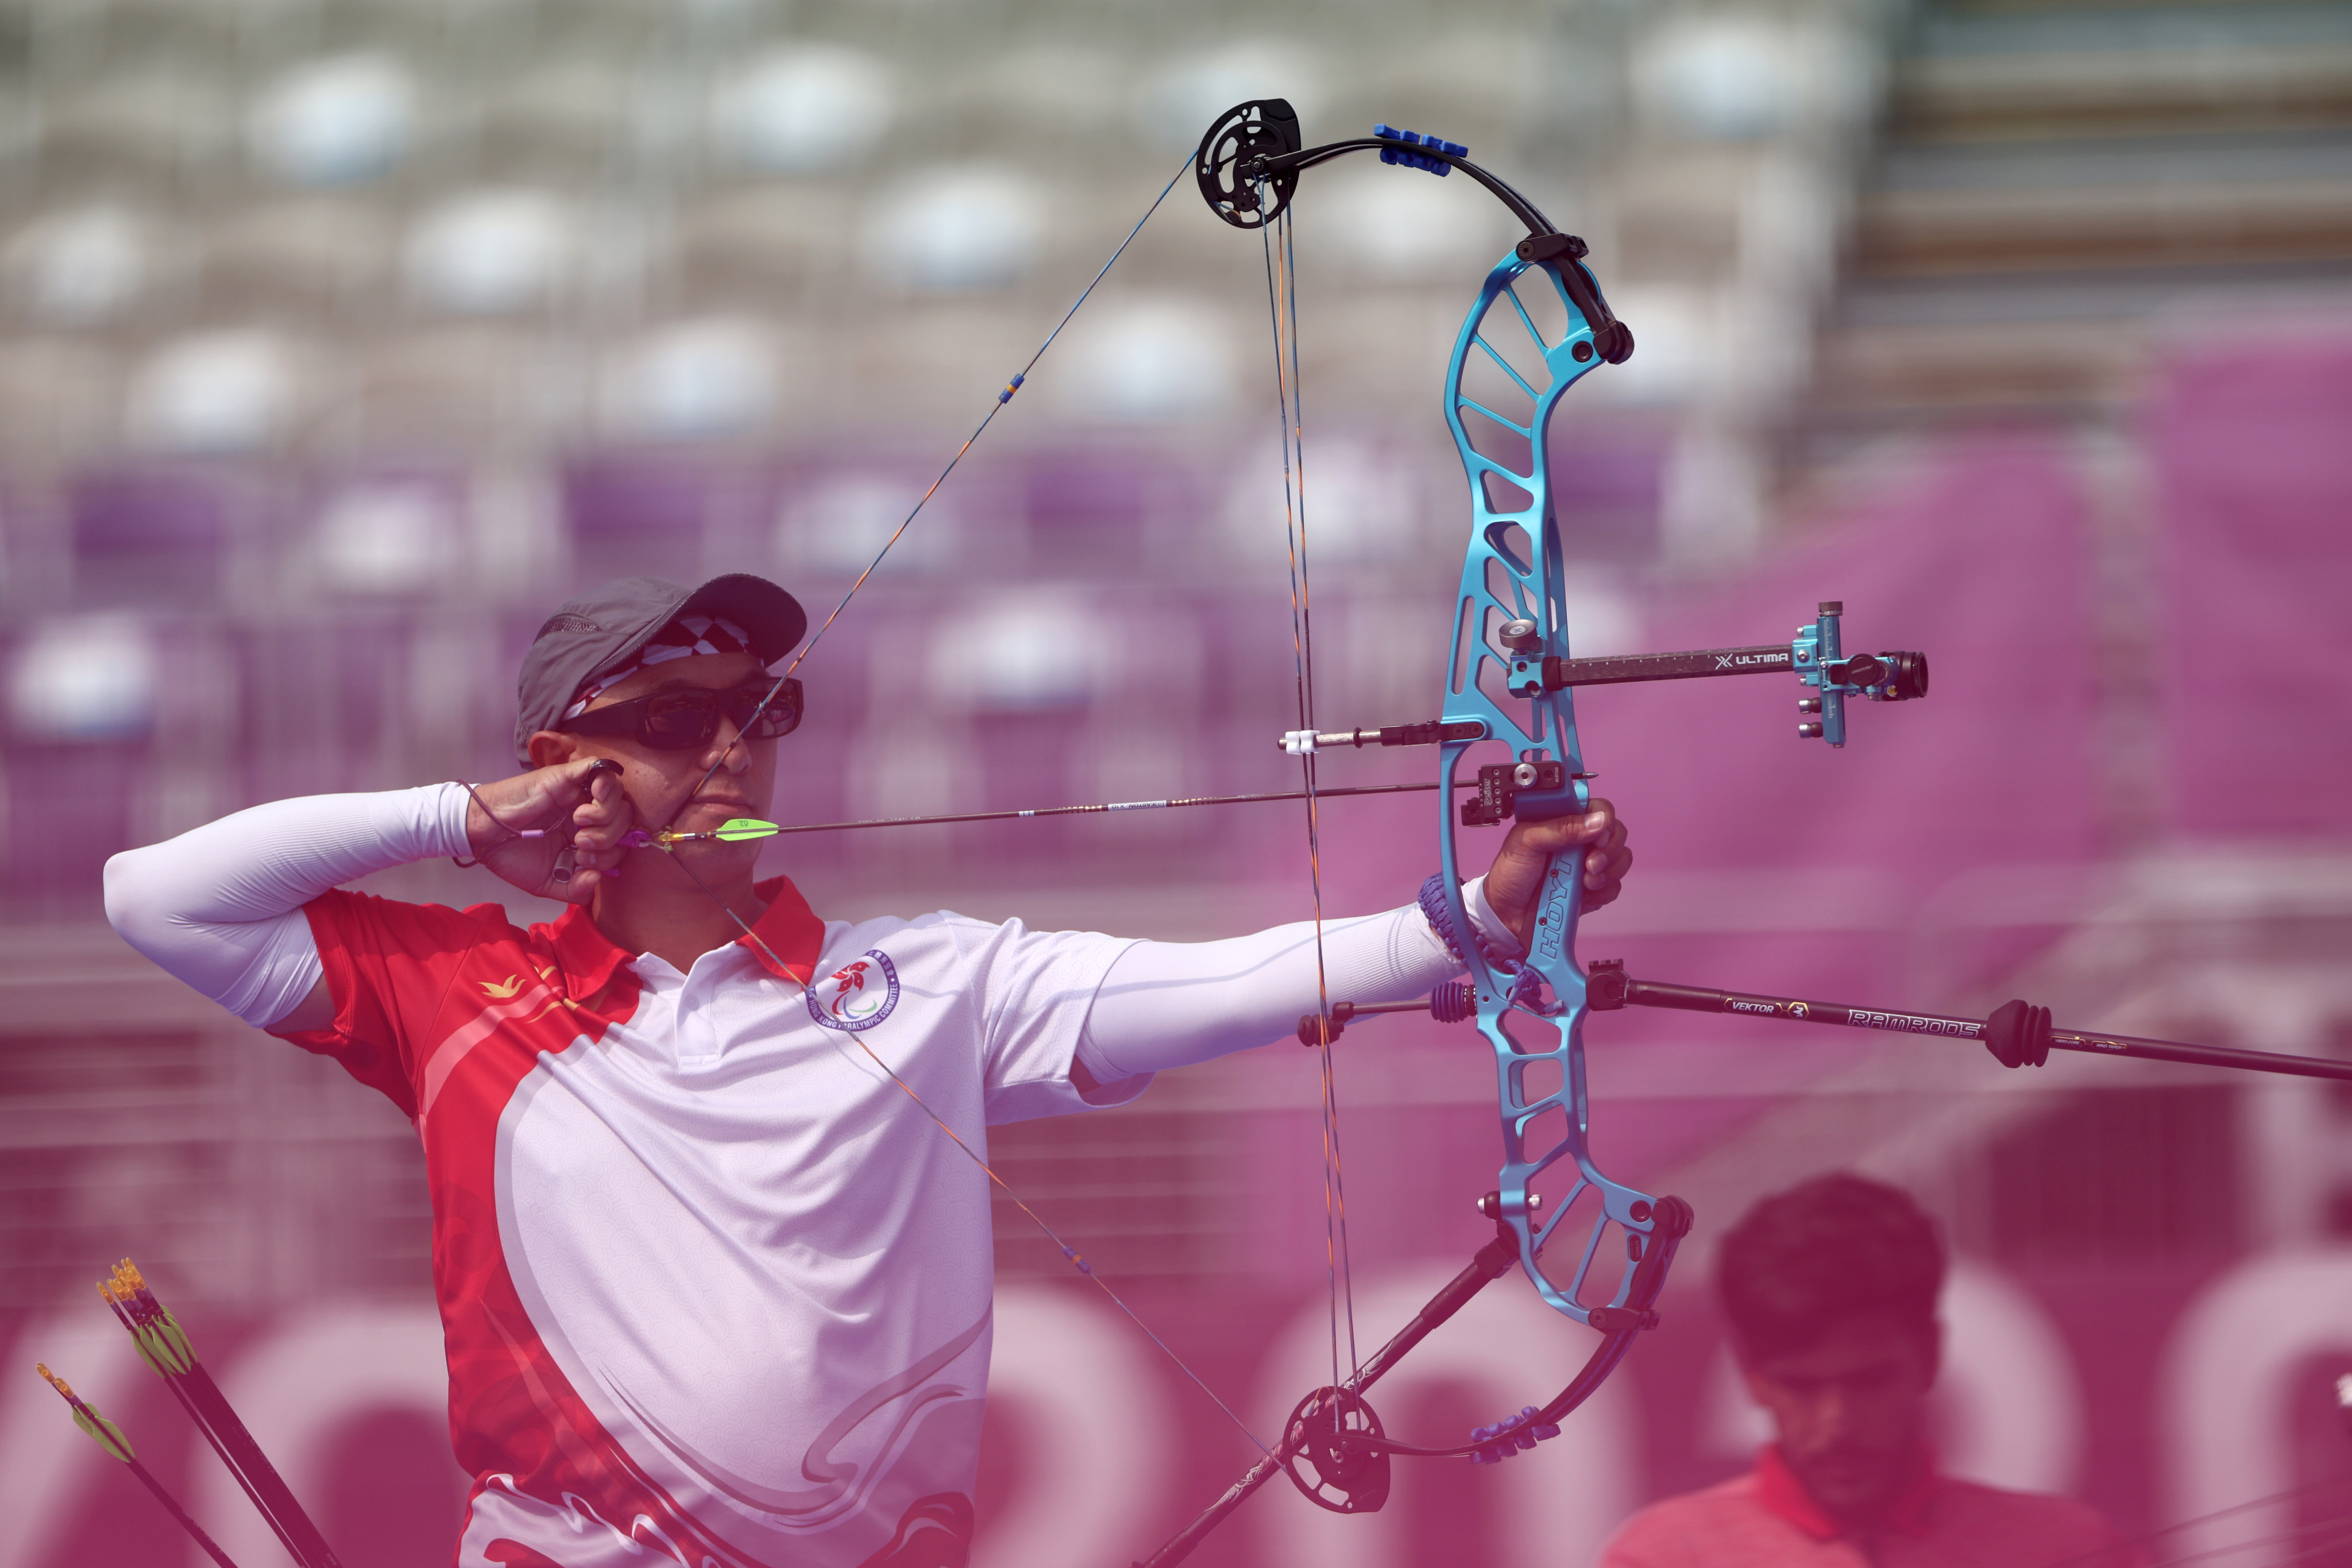 Hong Kong archer Ngai Ka-chuen in action at the Tokyo 2020 Paralympic Games. Photo: Reuters